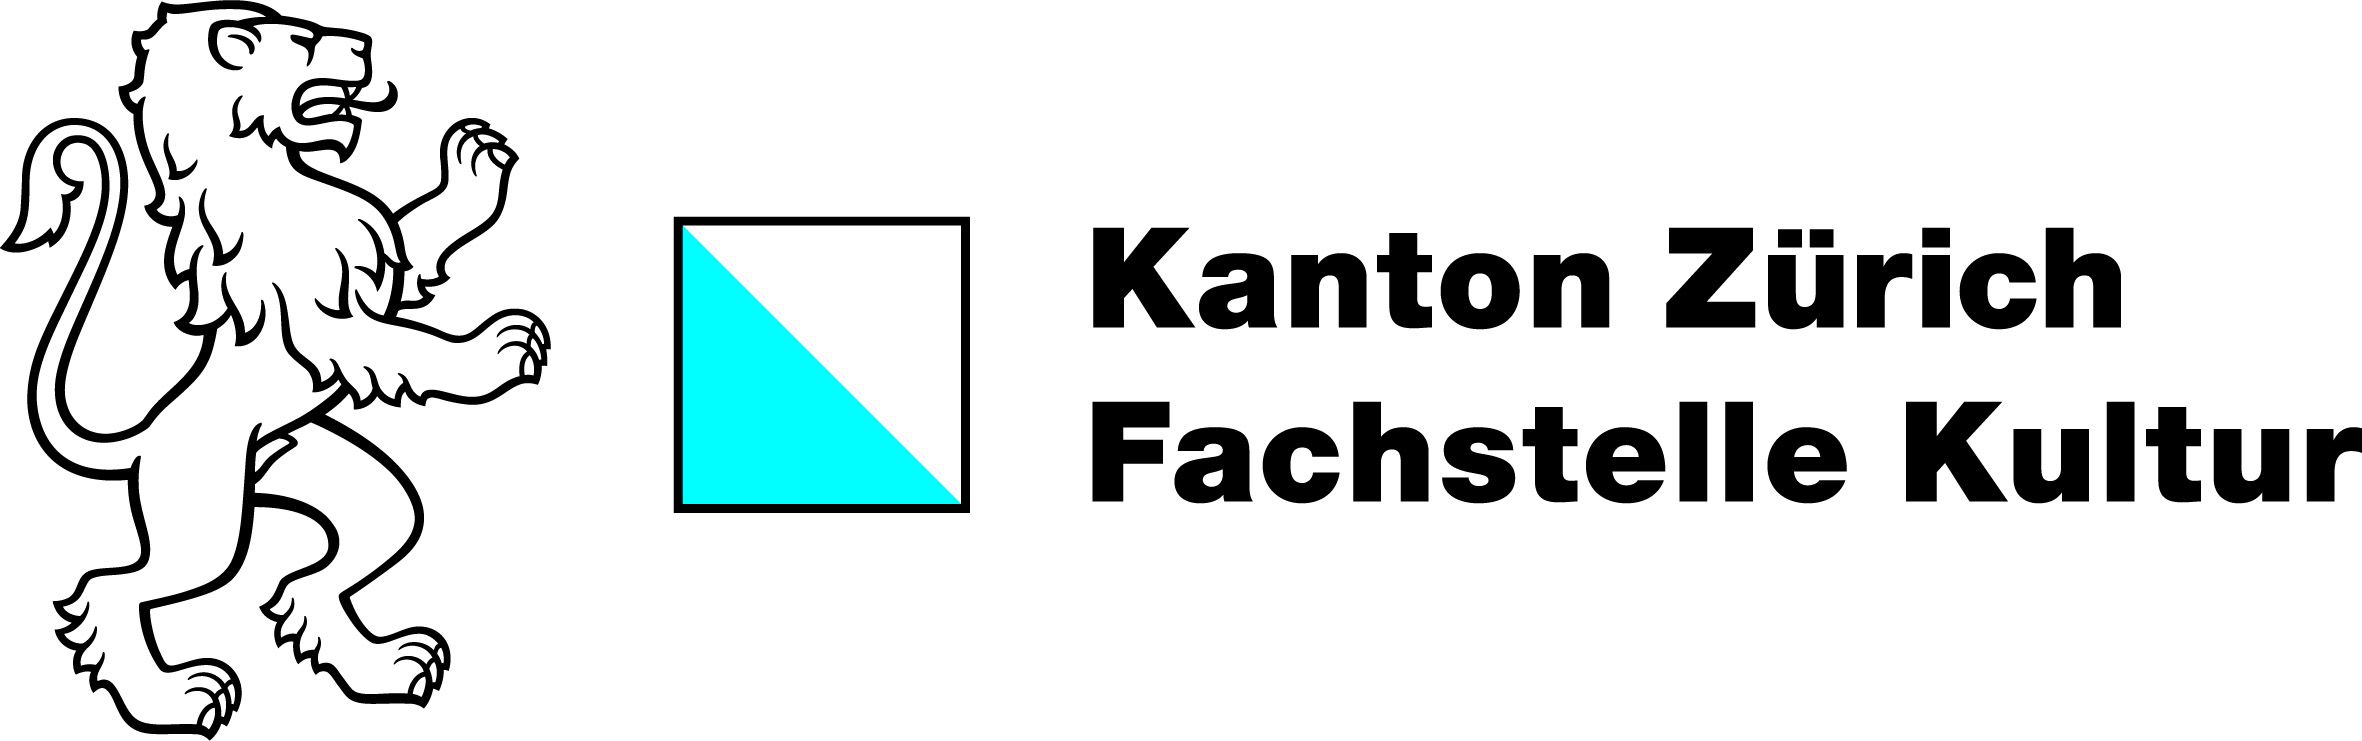 Kanton Zurich Fachstelle Kultur